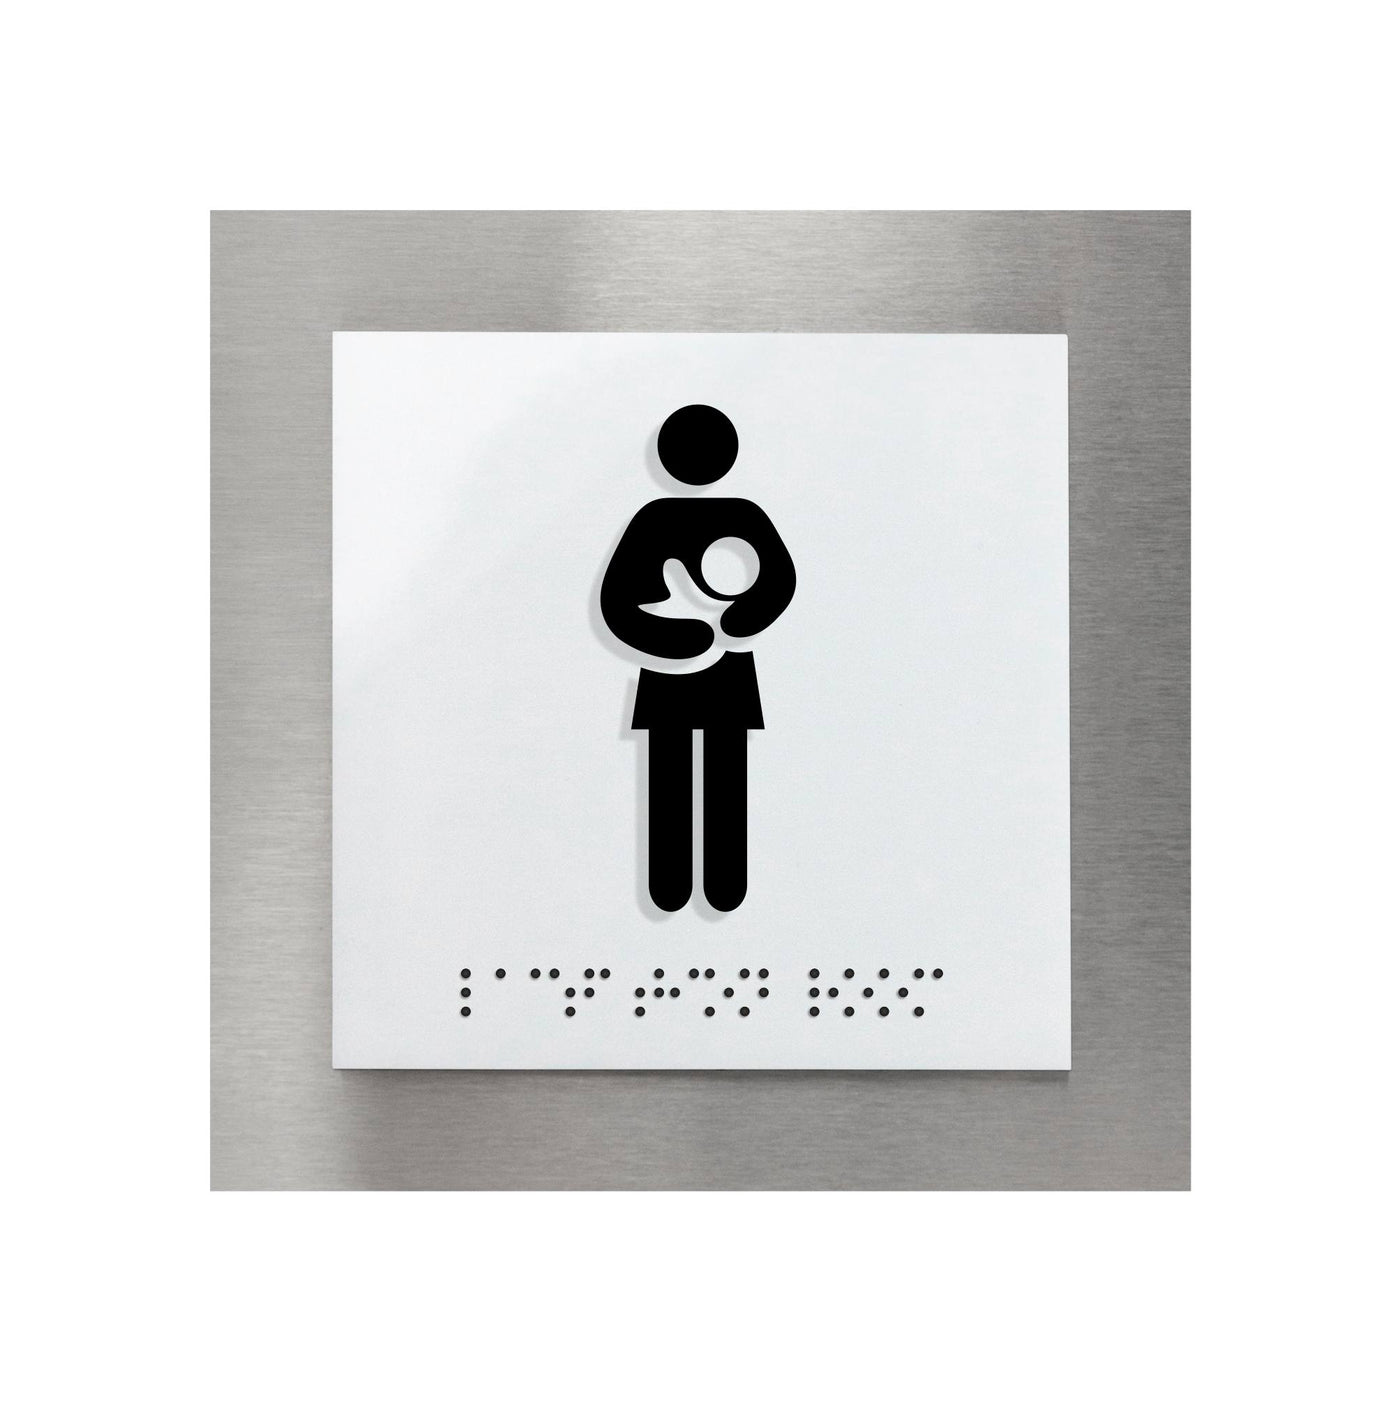 Lactation Room & Mothers Room Sign — "Modern" Design